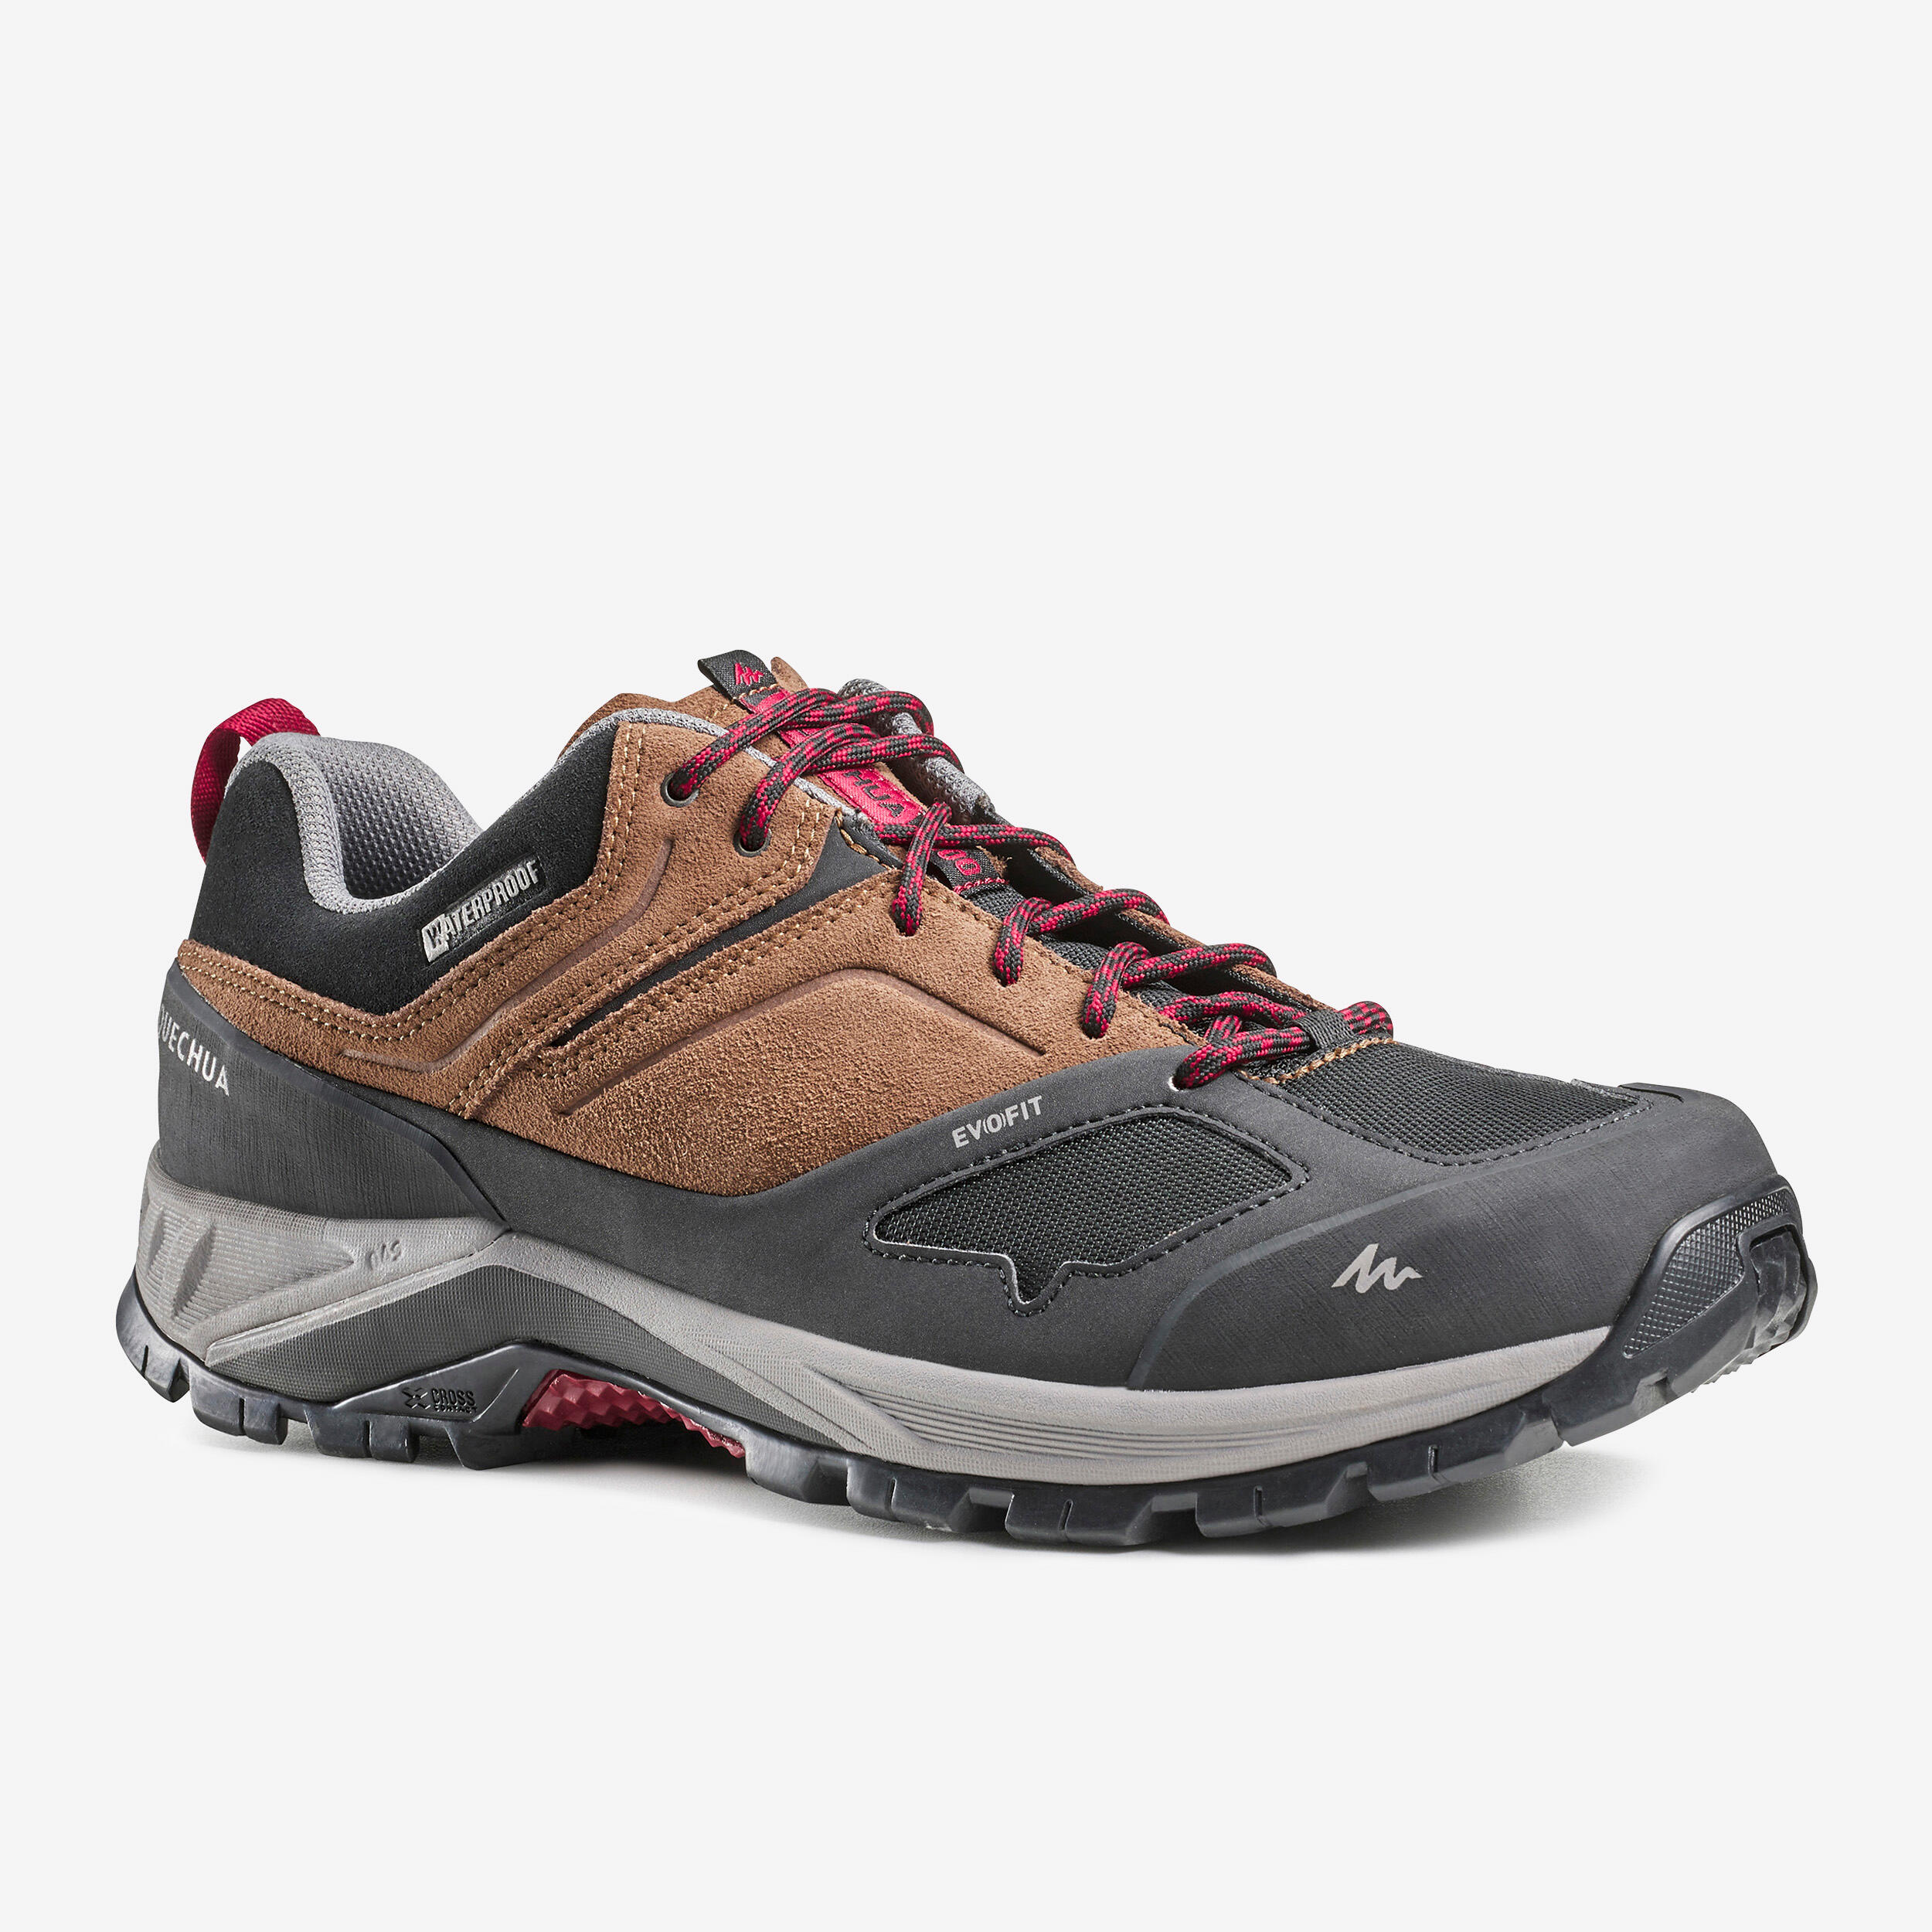 QUECHUA Men's waterproof mountain hiking shoes - MH500 - Brown